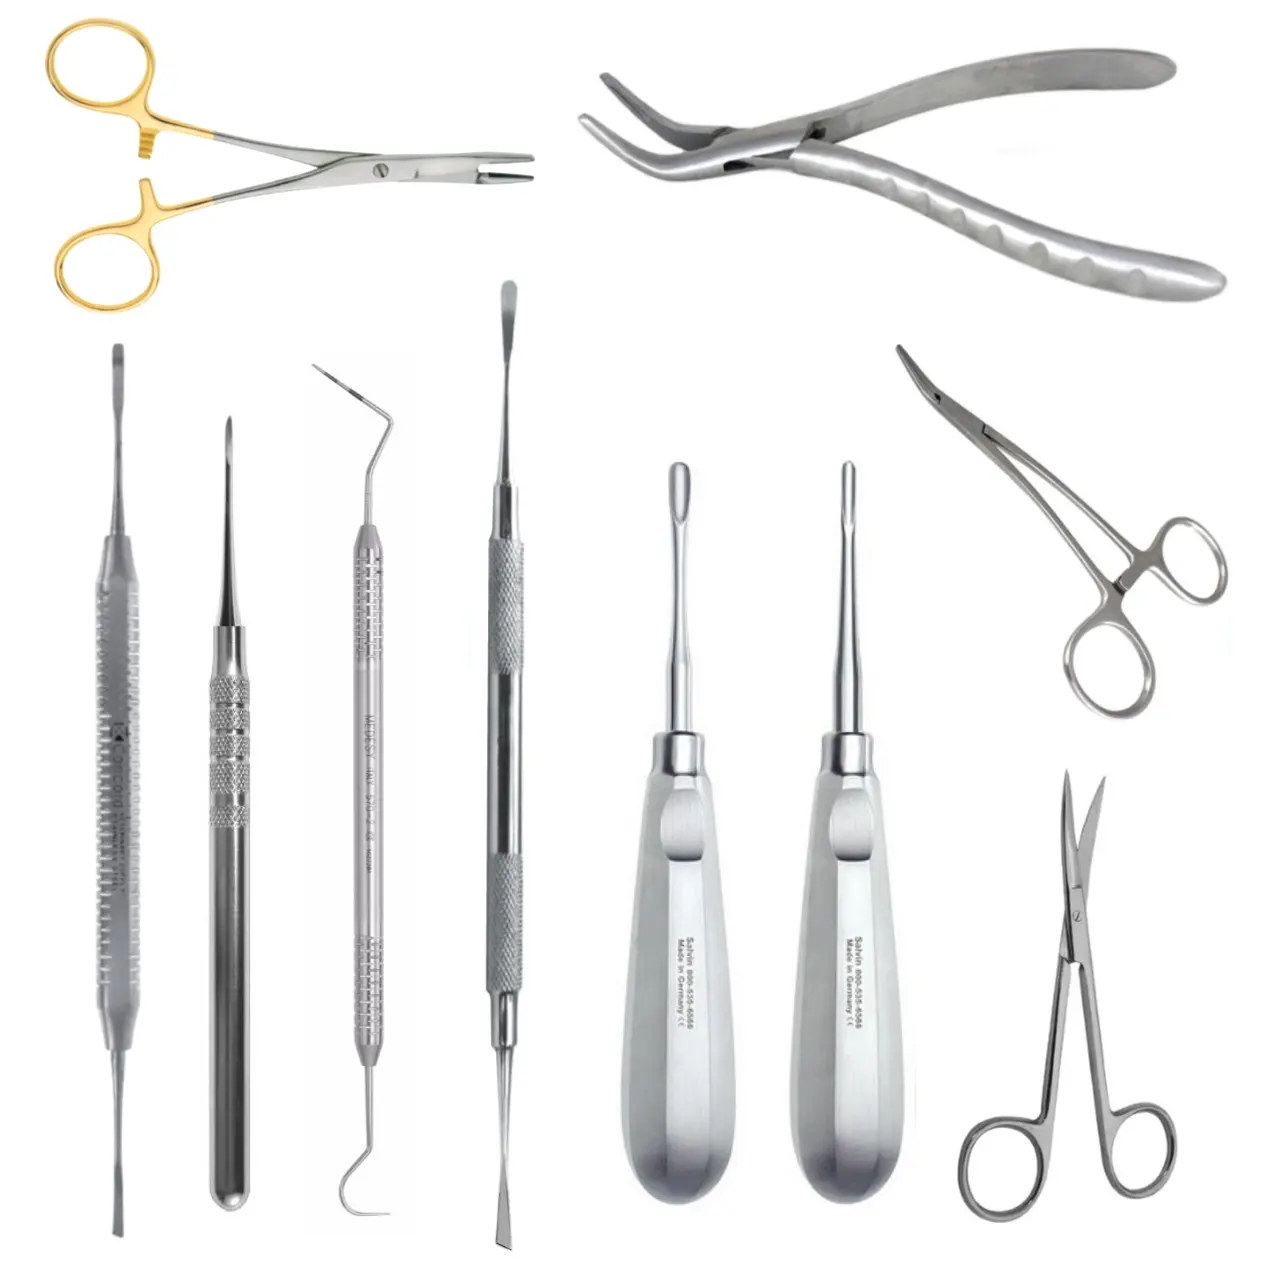 Kit de instrumentos dentales básicos, alta calidad, bajo precio